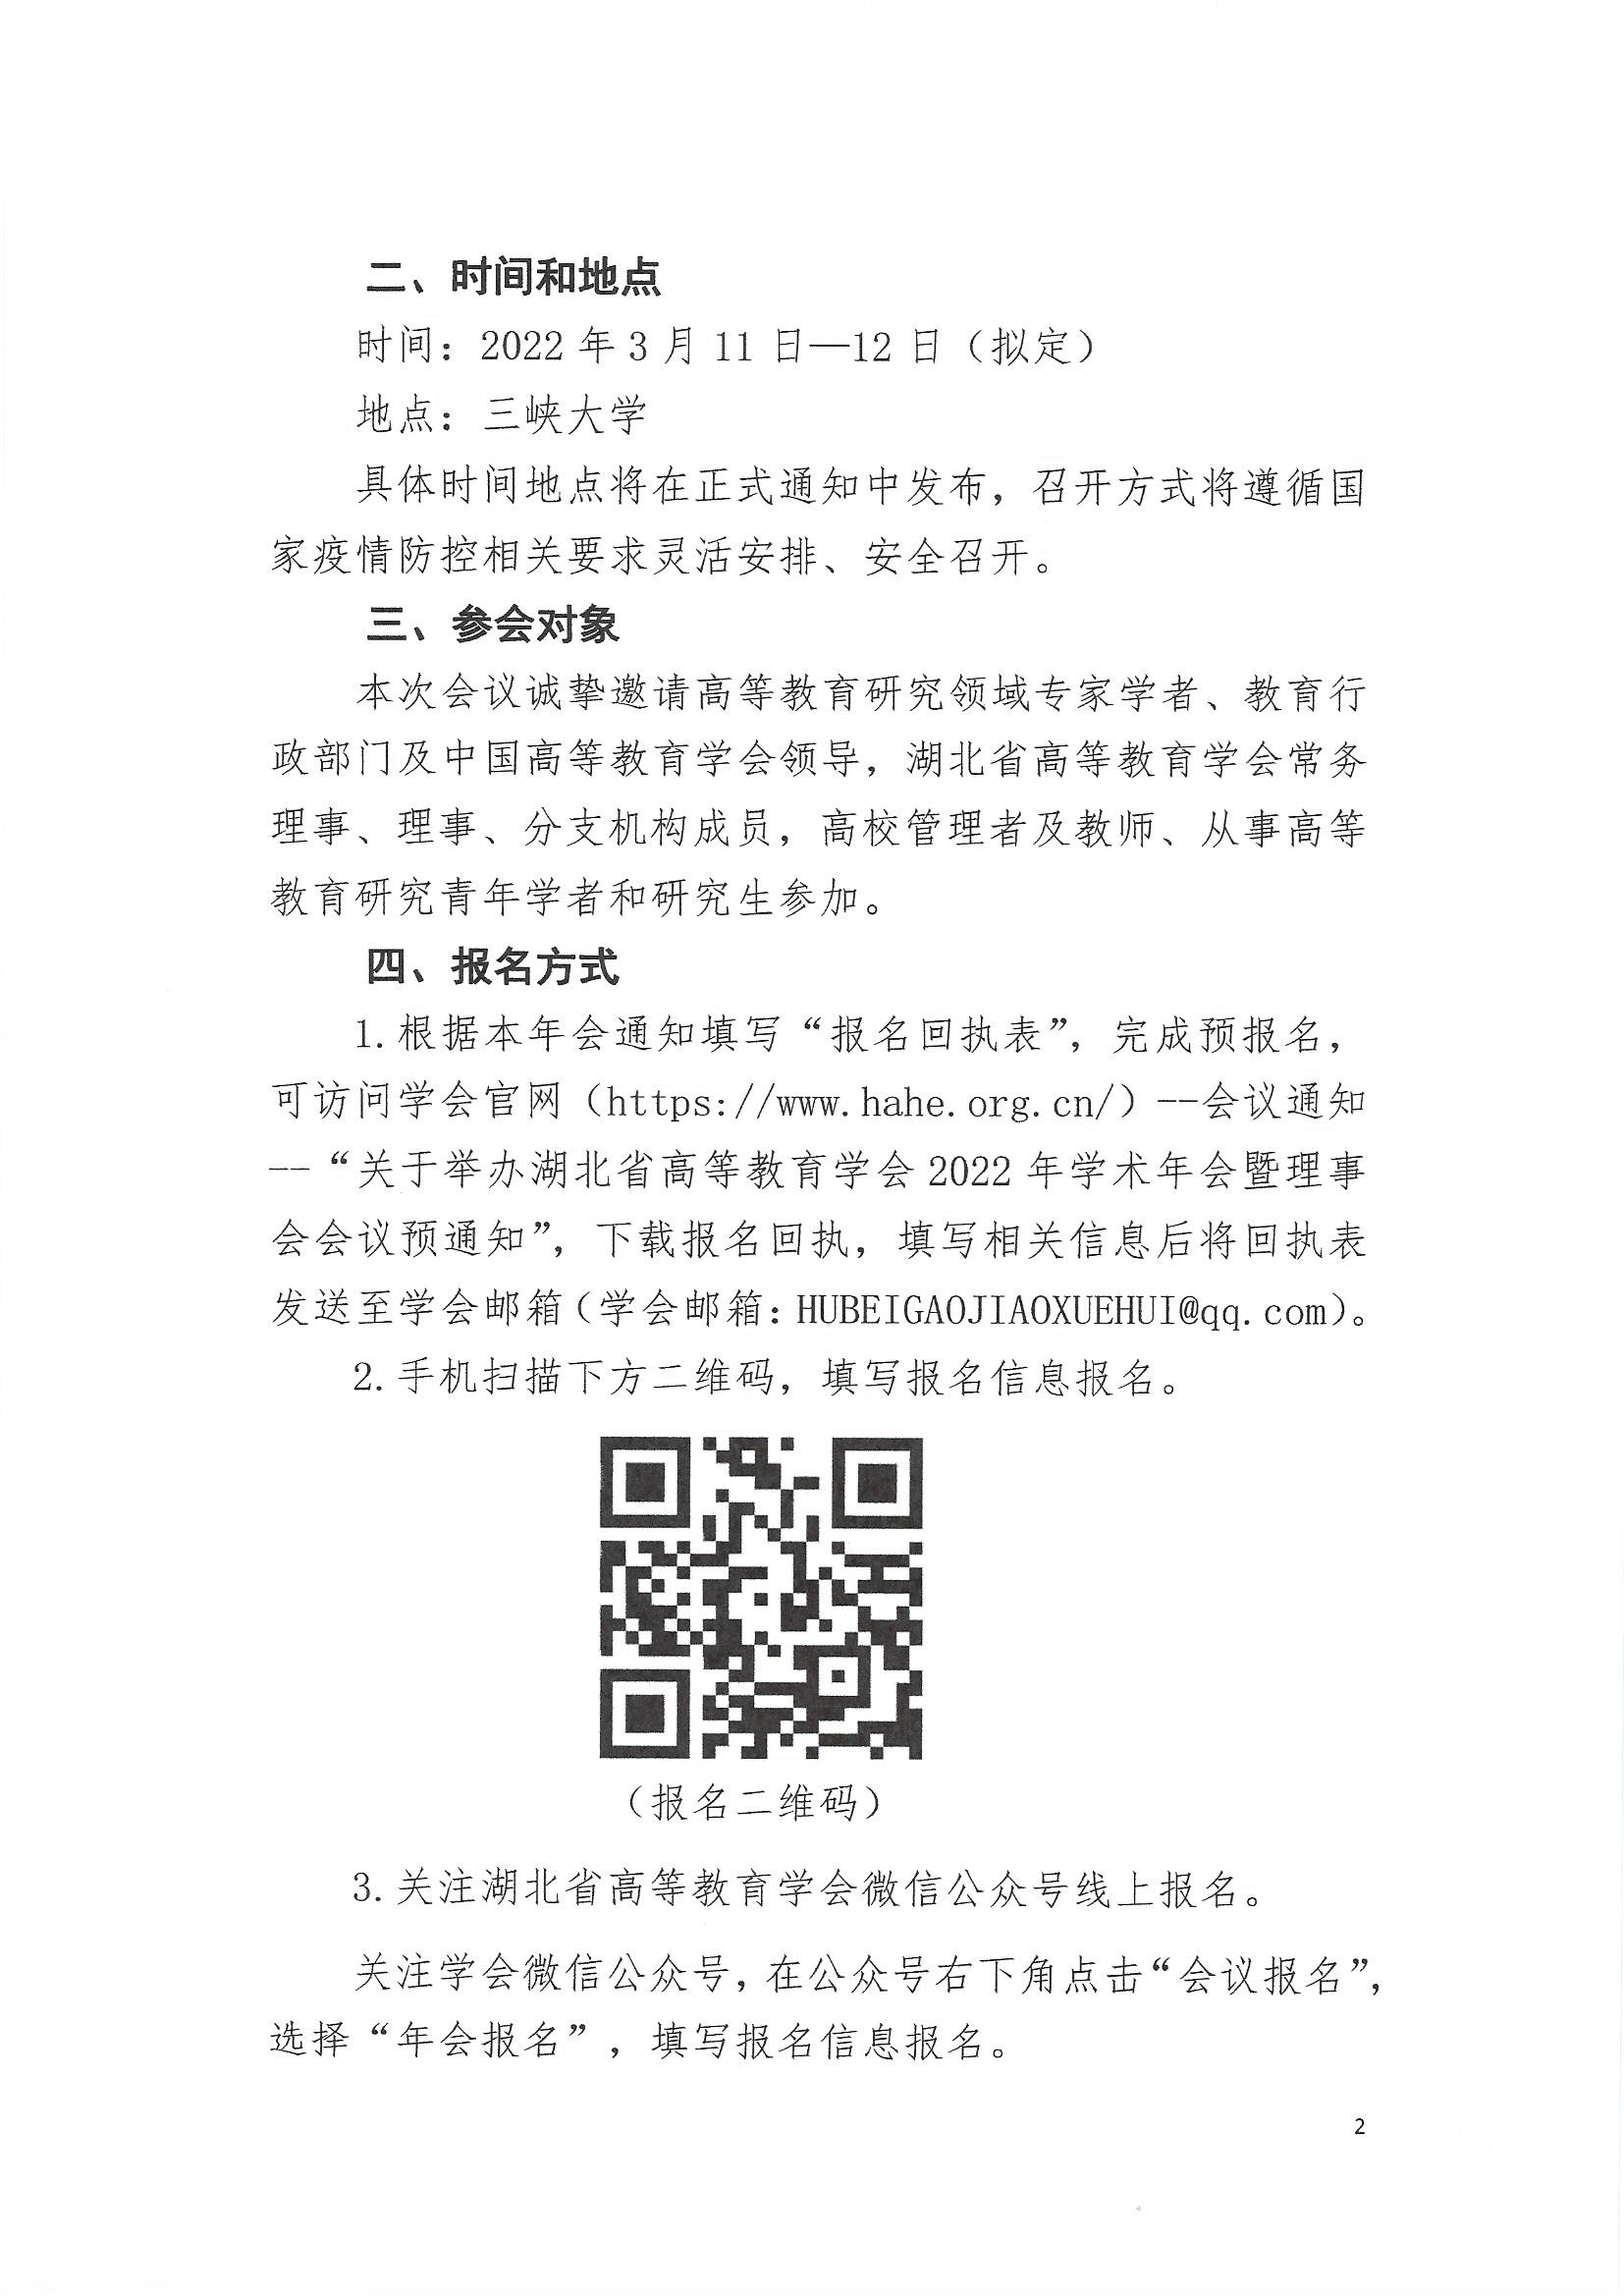 关于举办湖北省高等教育学会2022年学术年会暨理事会会议的预通知_页面_2.jpg